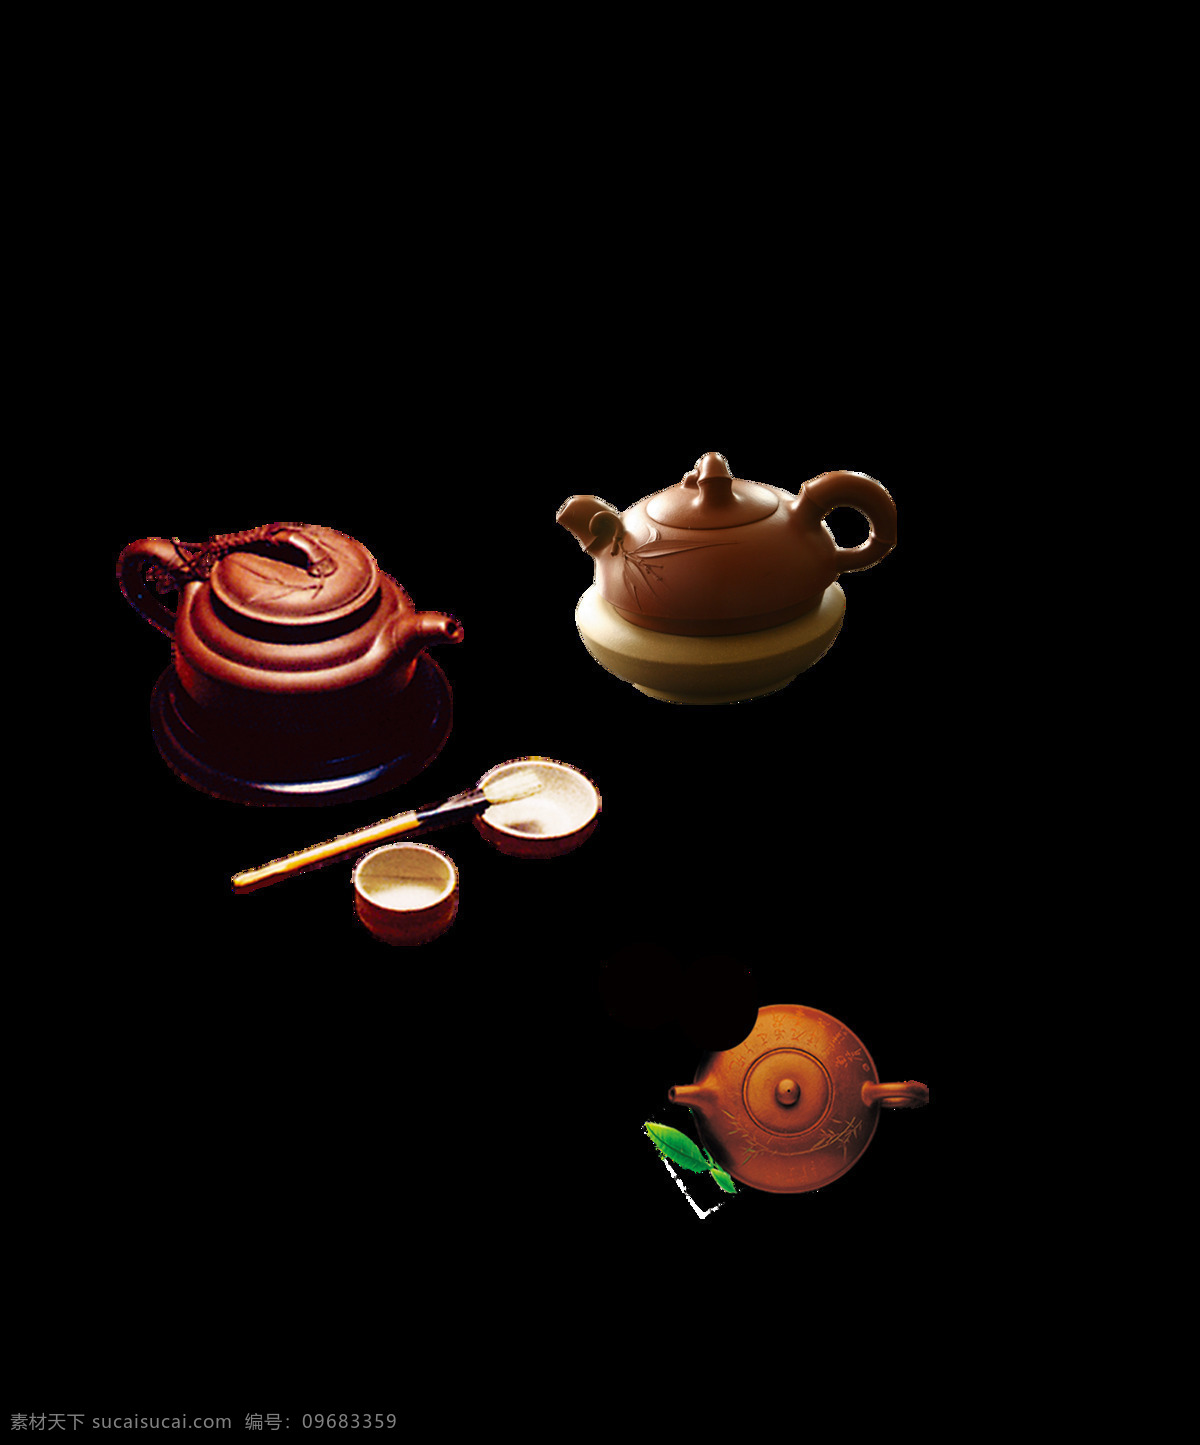 现代 雅致 褐色 茶壶 产品 实物 茶具 茶配件 产品实物 褐色茶壶 雅致风格